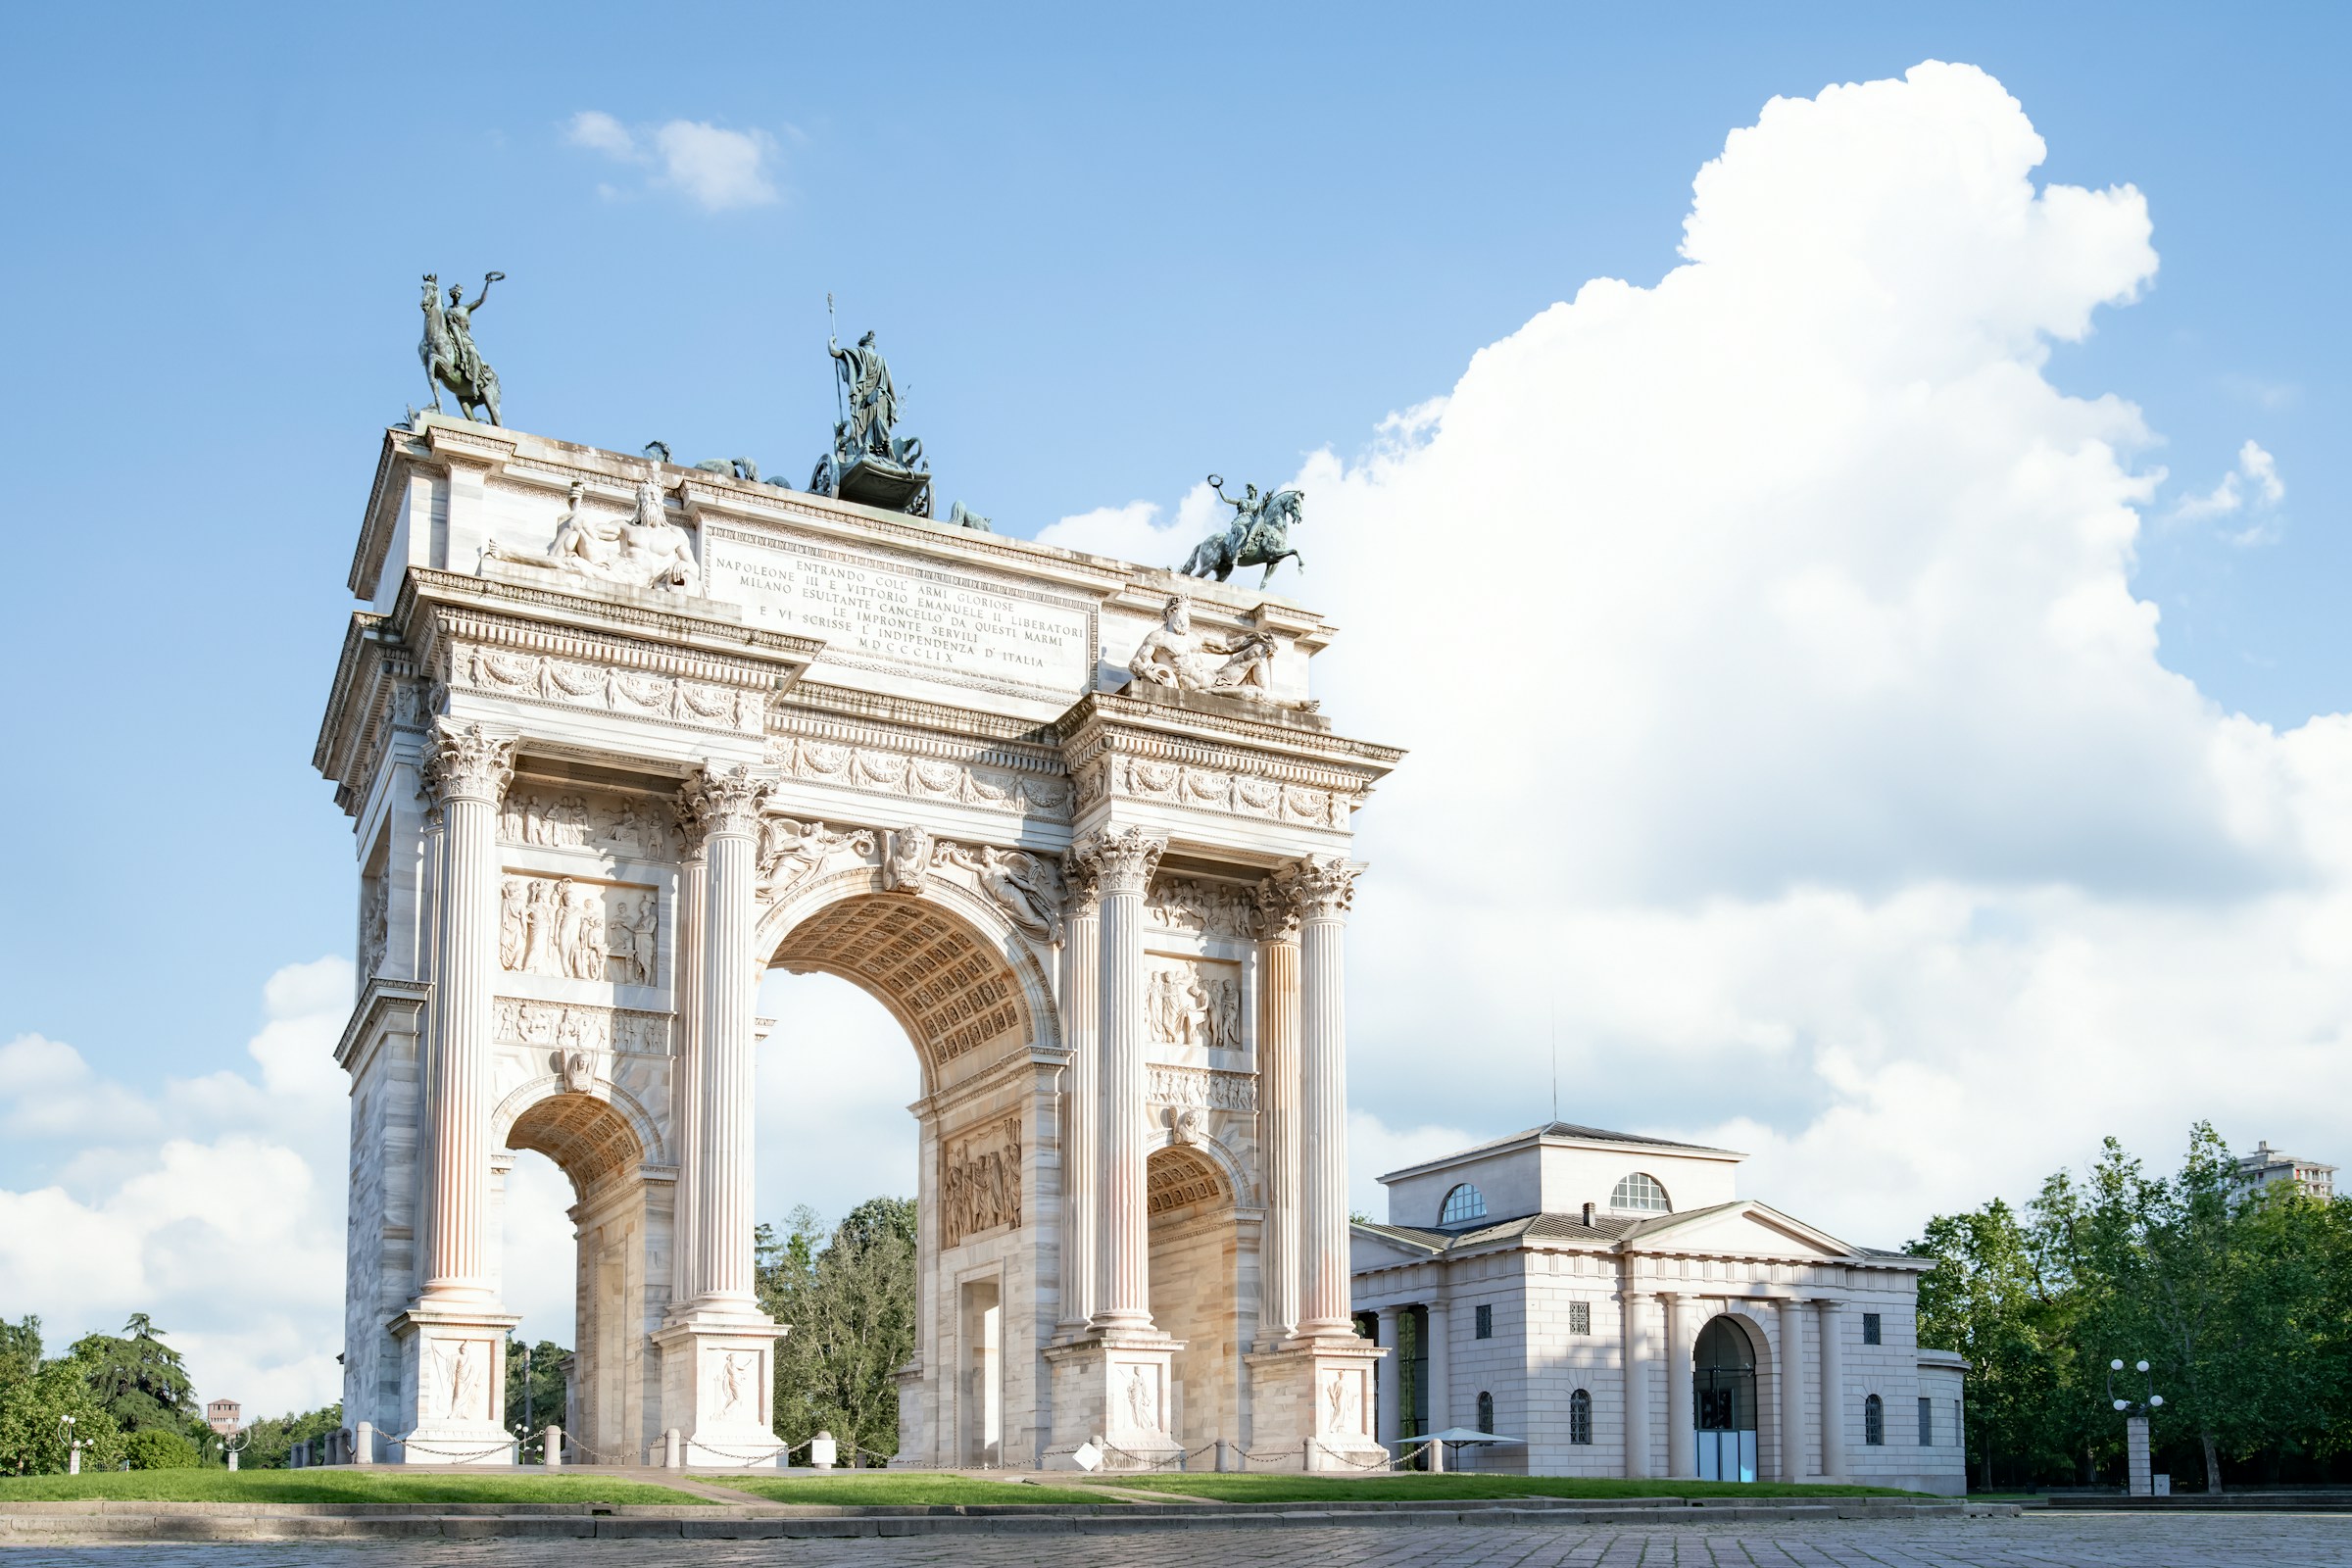 Triumfbåge med skulpturer mot en klar himmel, arkitektoniskt landmärke och historiska monumentet i Milano.